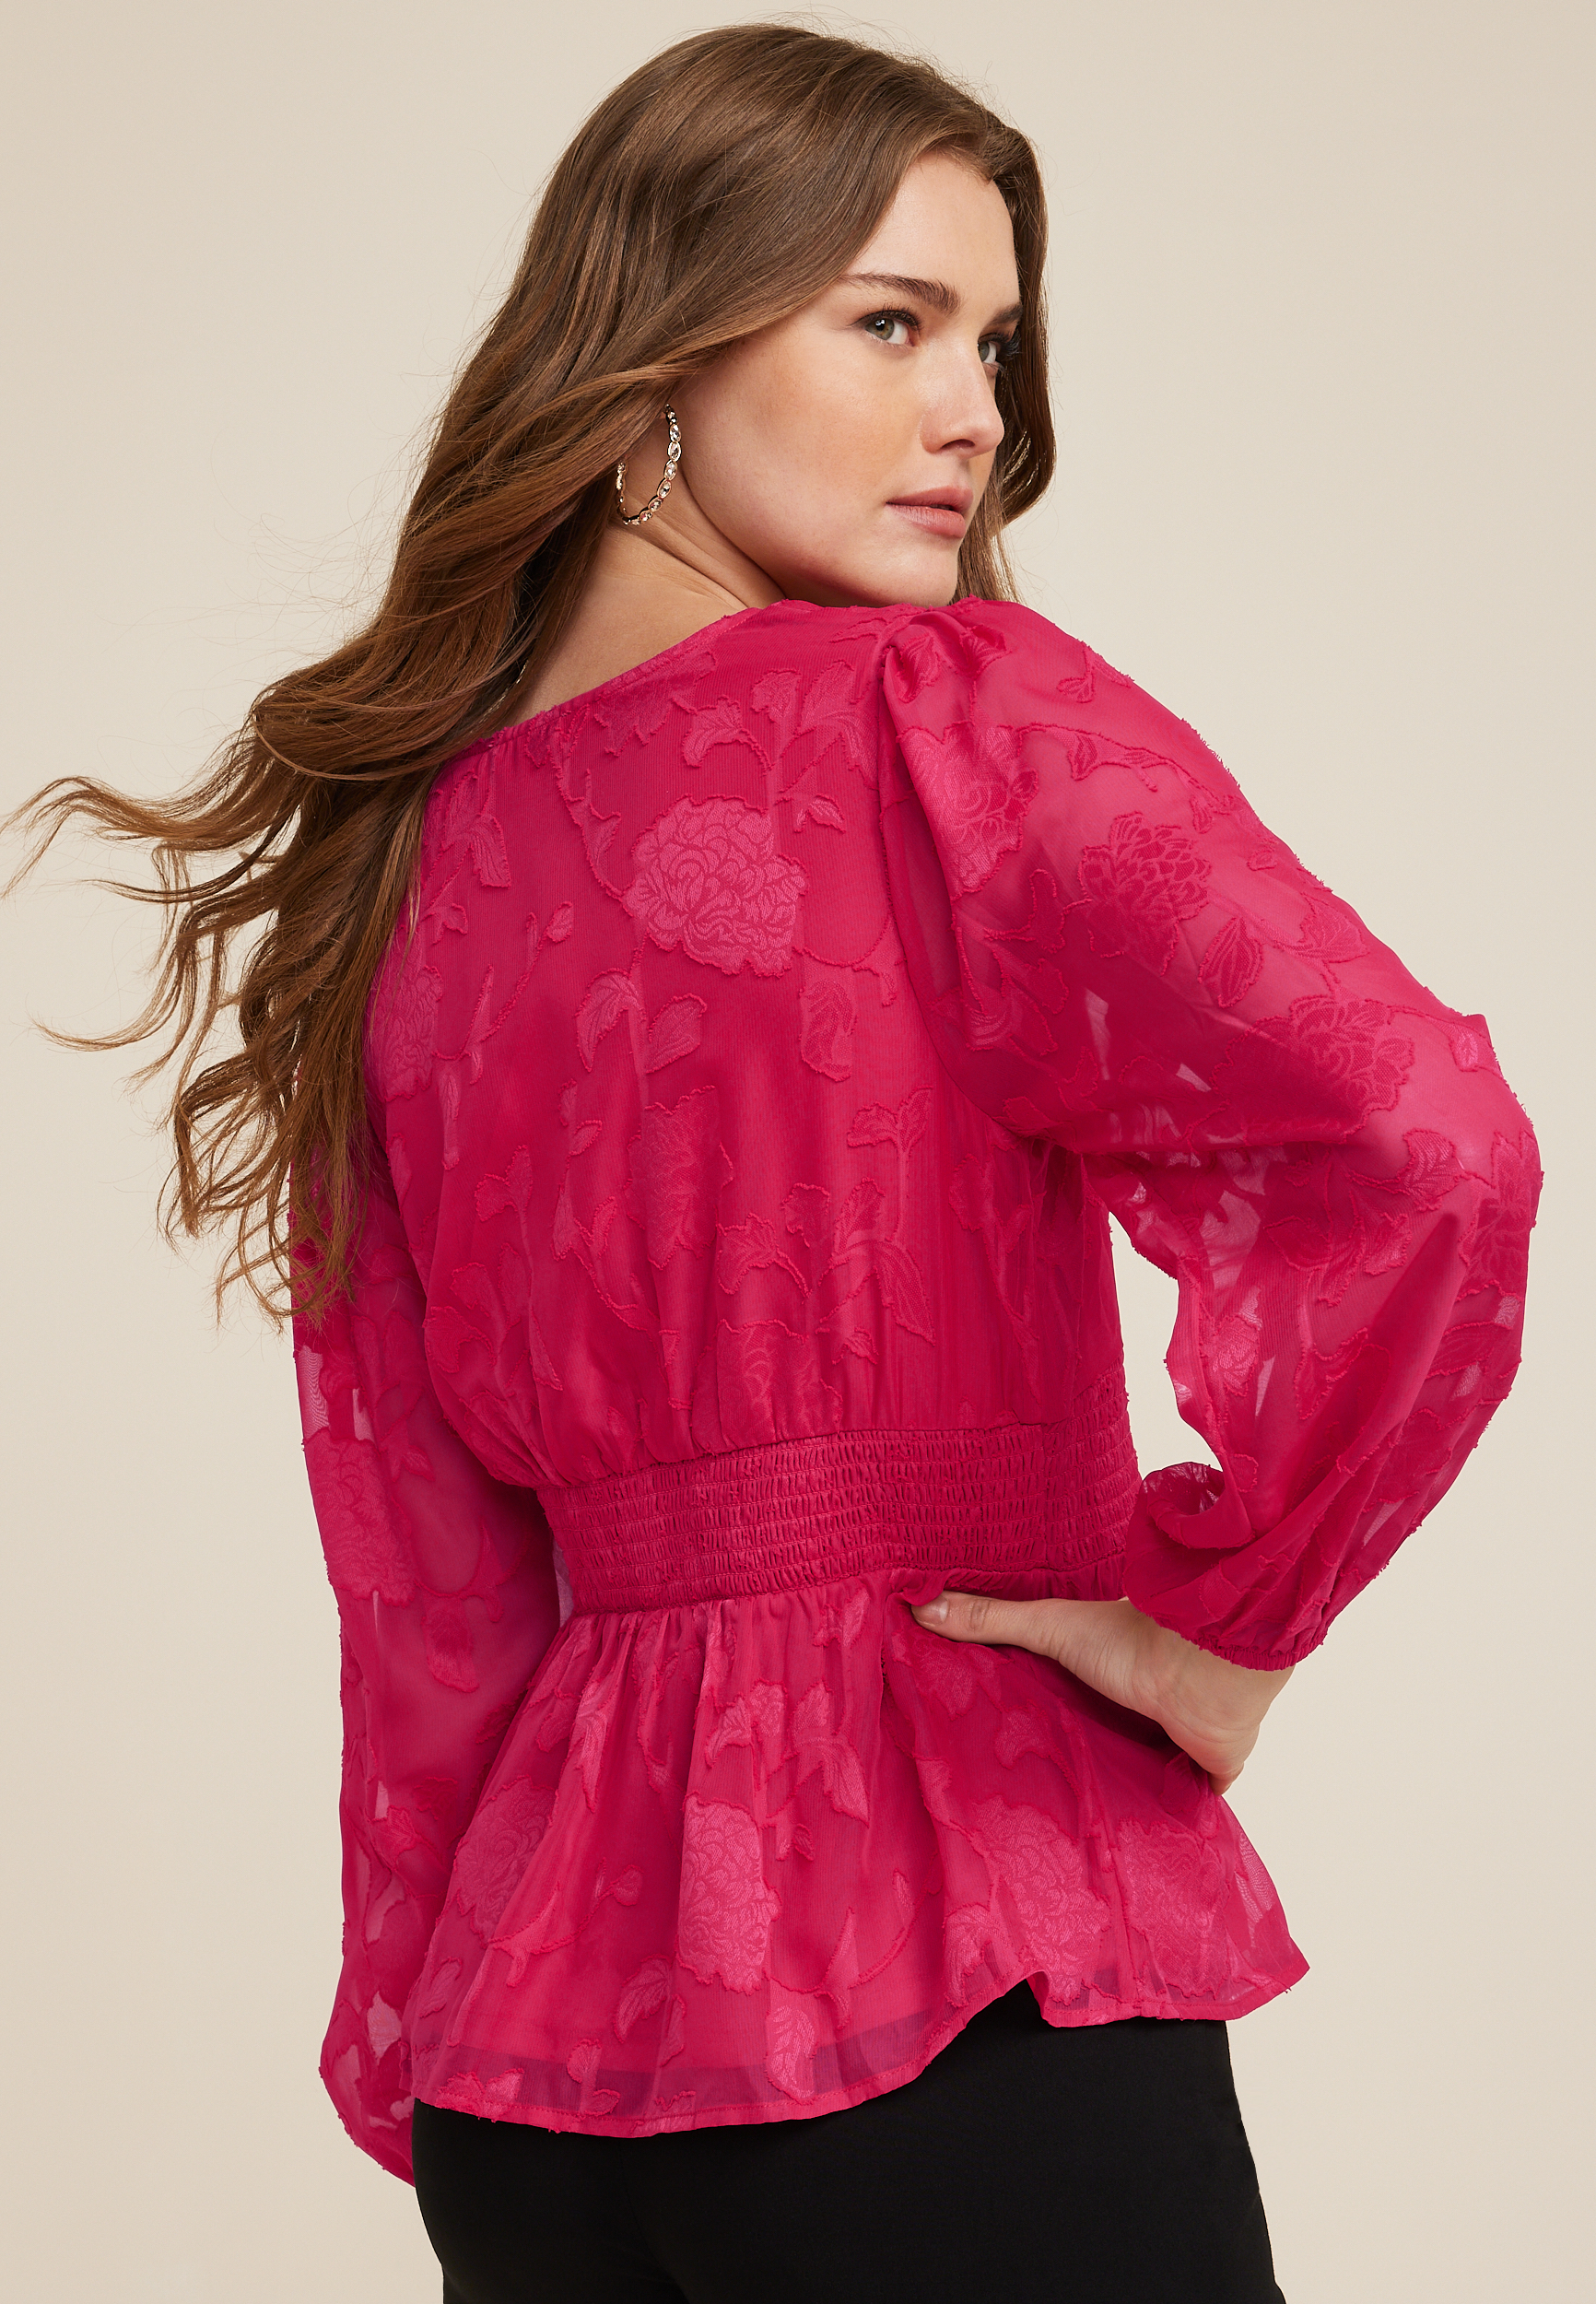 muguet ripple sheer peplum blouse Pink-